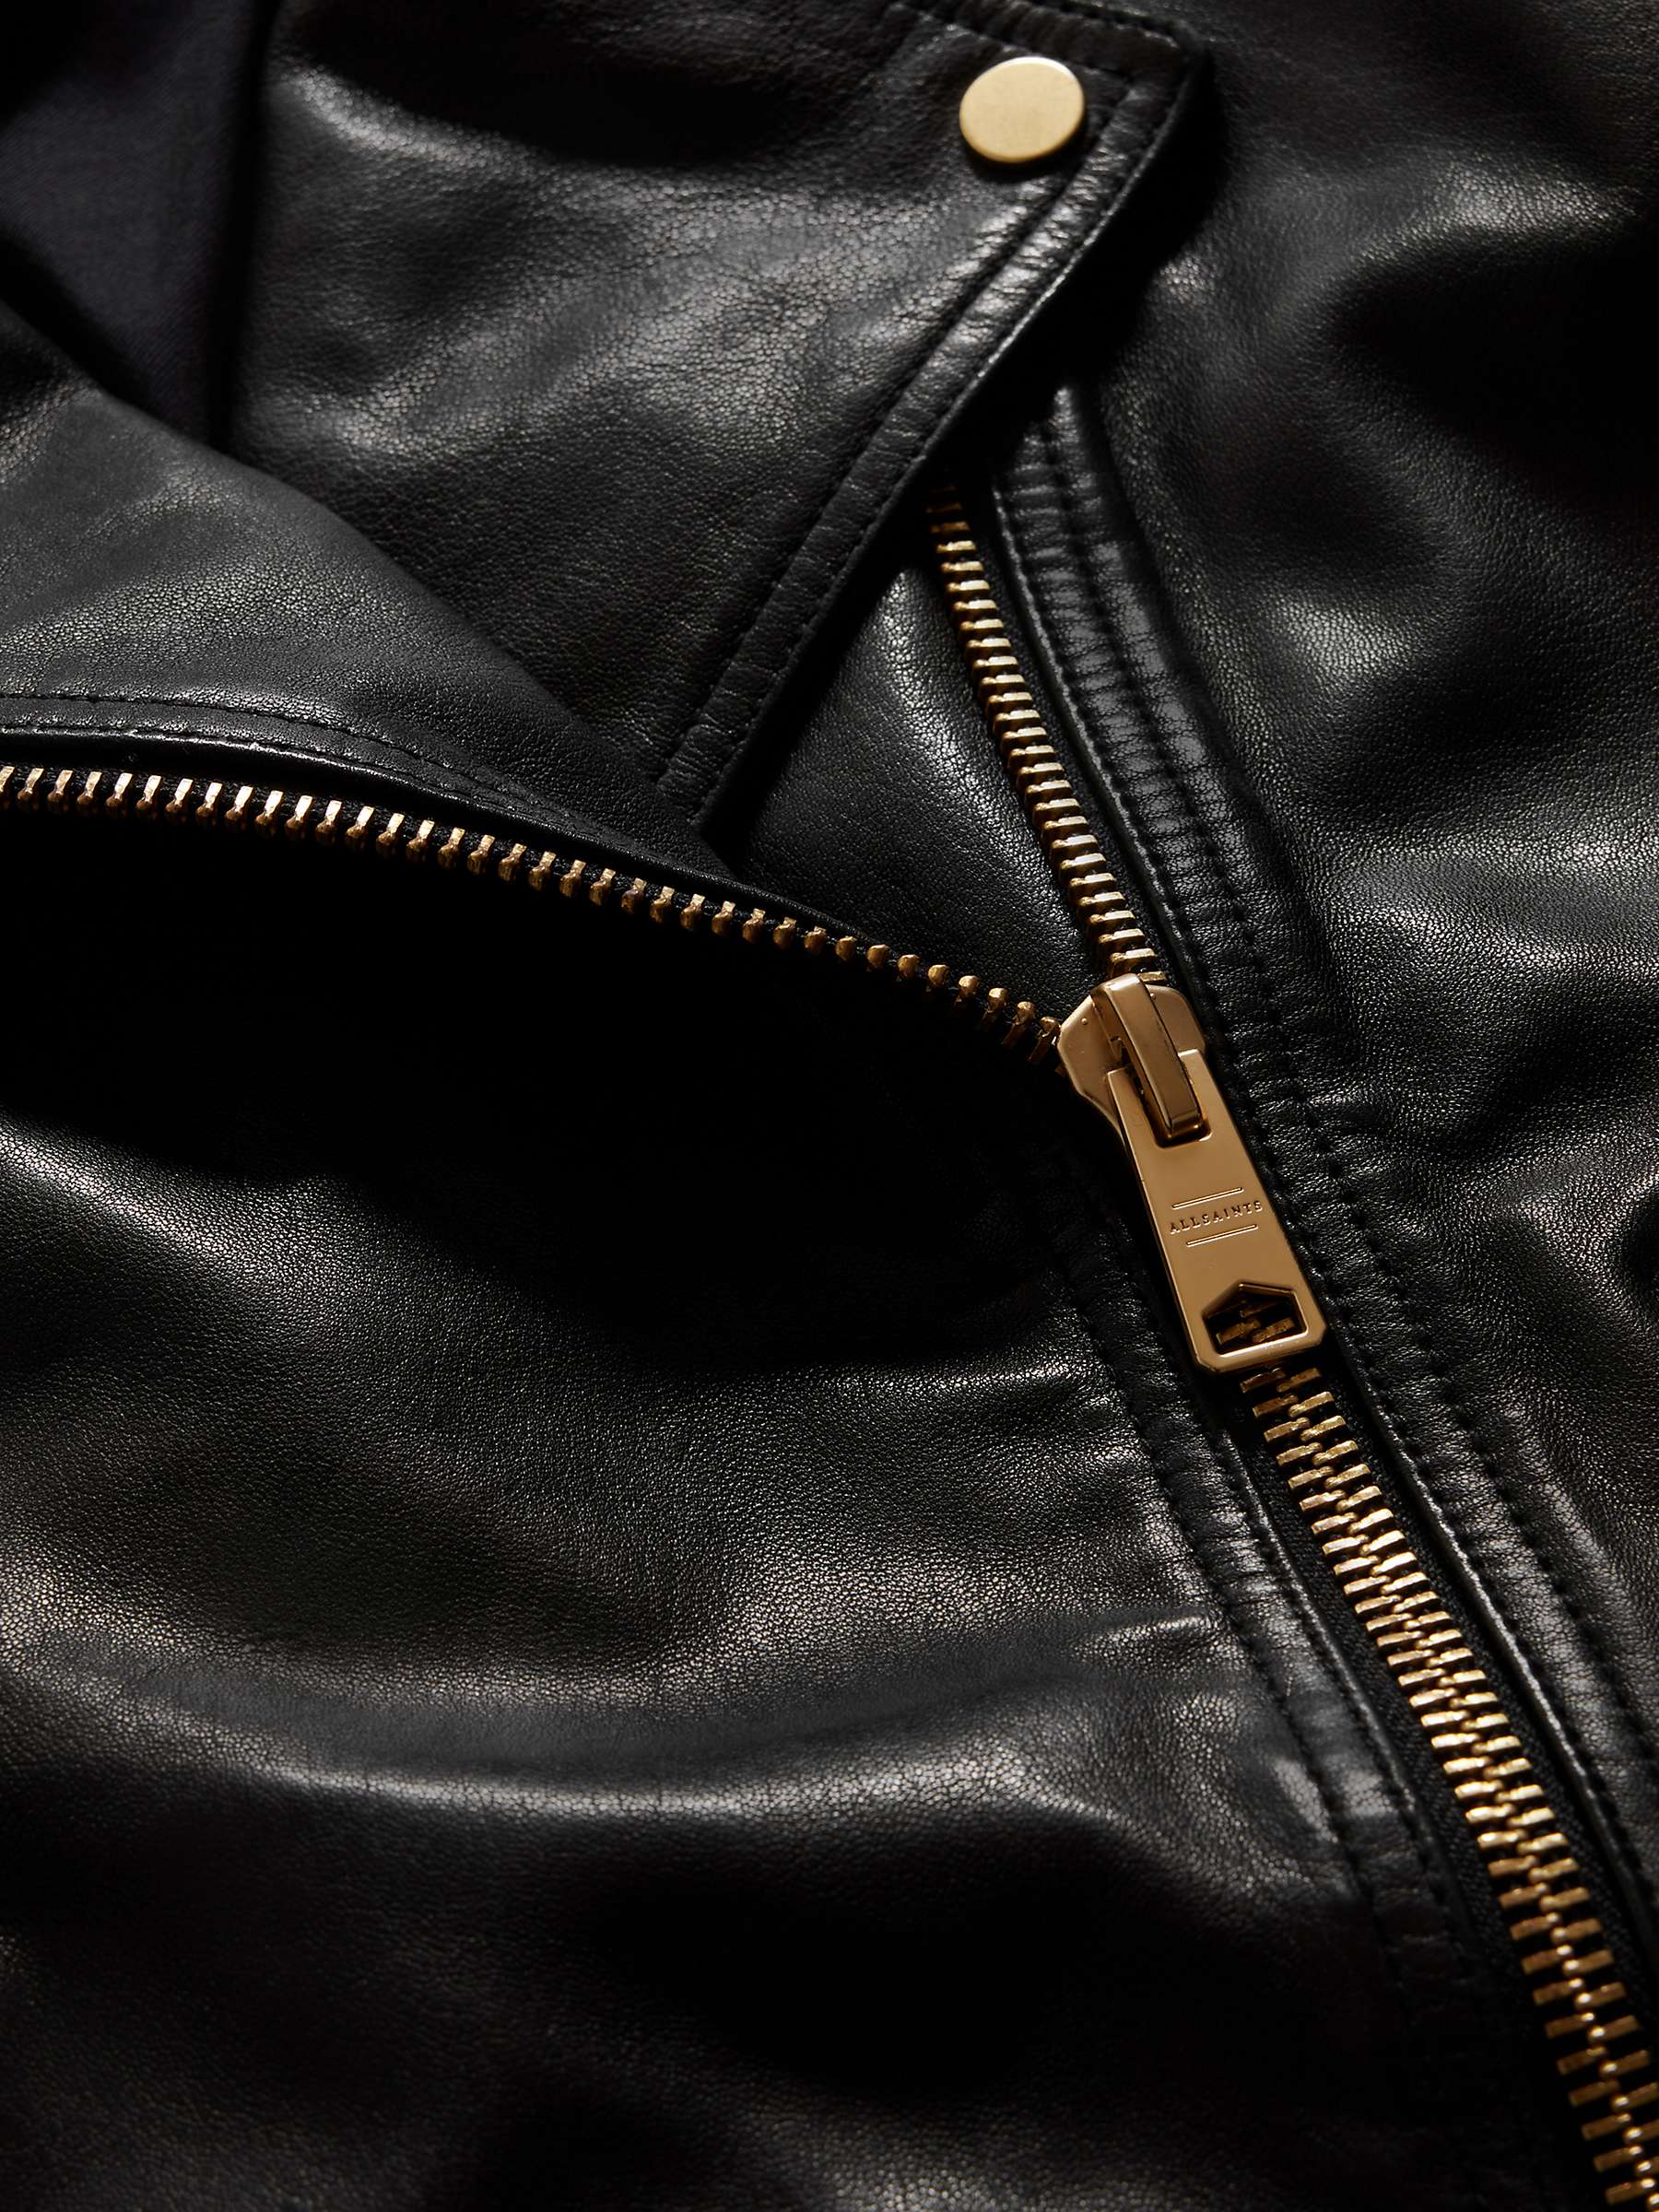 Buy AllSaints Dalby Leather Biker Jacket, Black/Gold Online at johnlewis.com